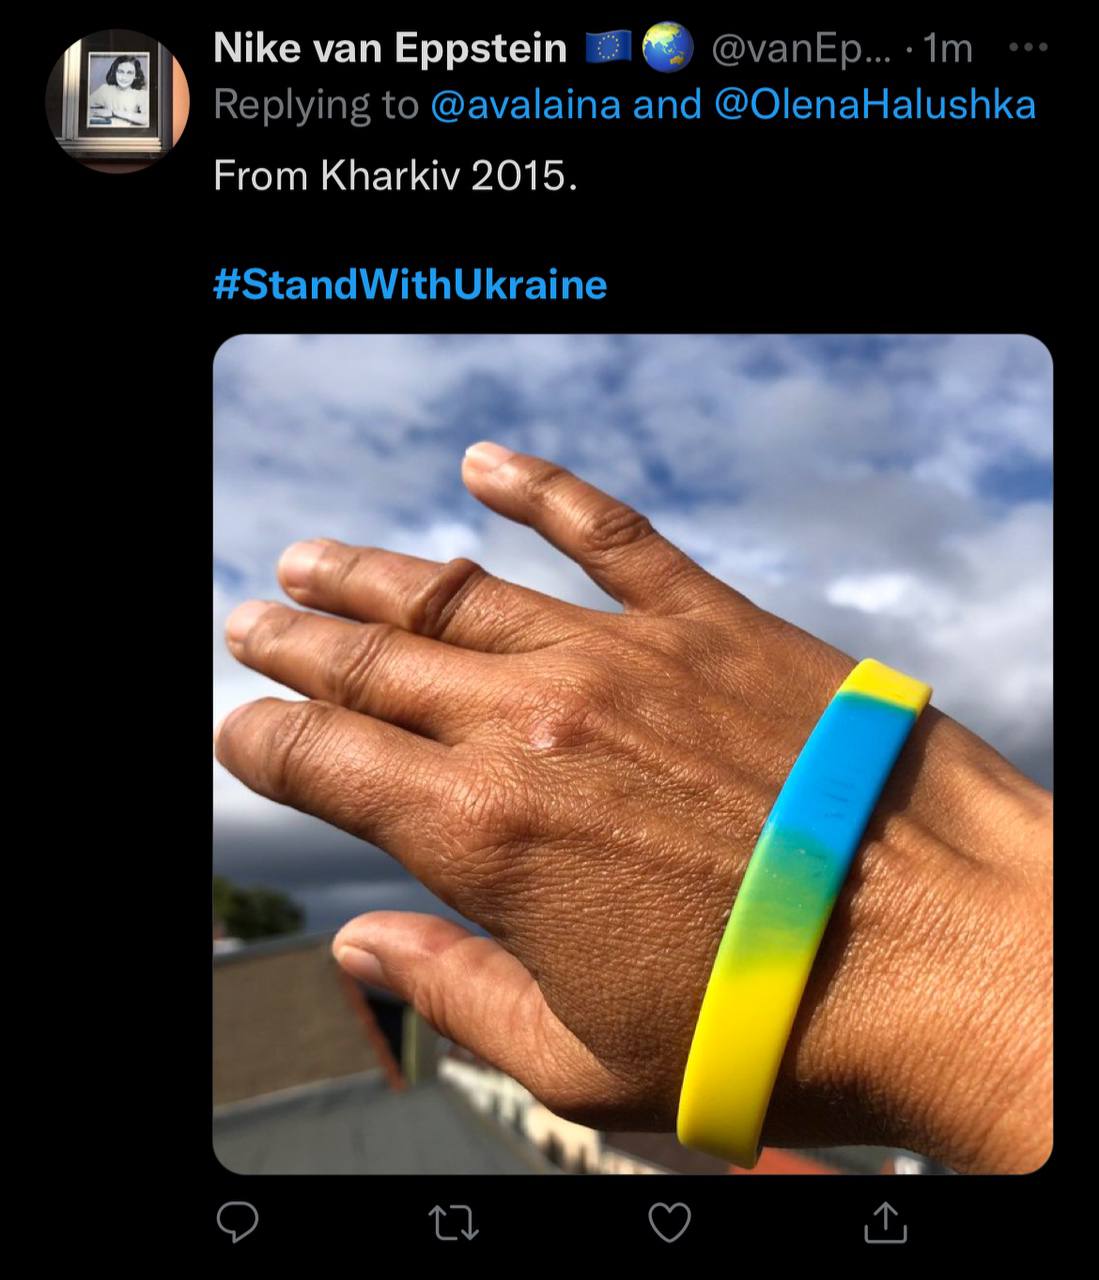 Ізюм у Twitter запустили флешмоб на підтримку Україну